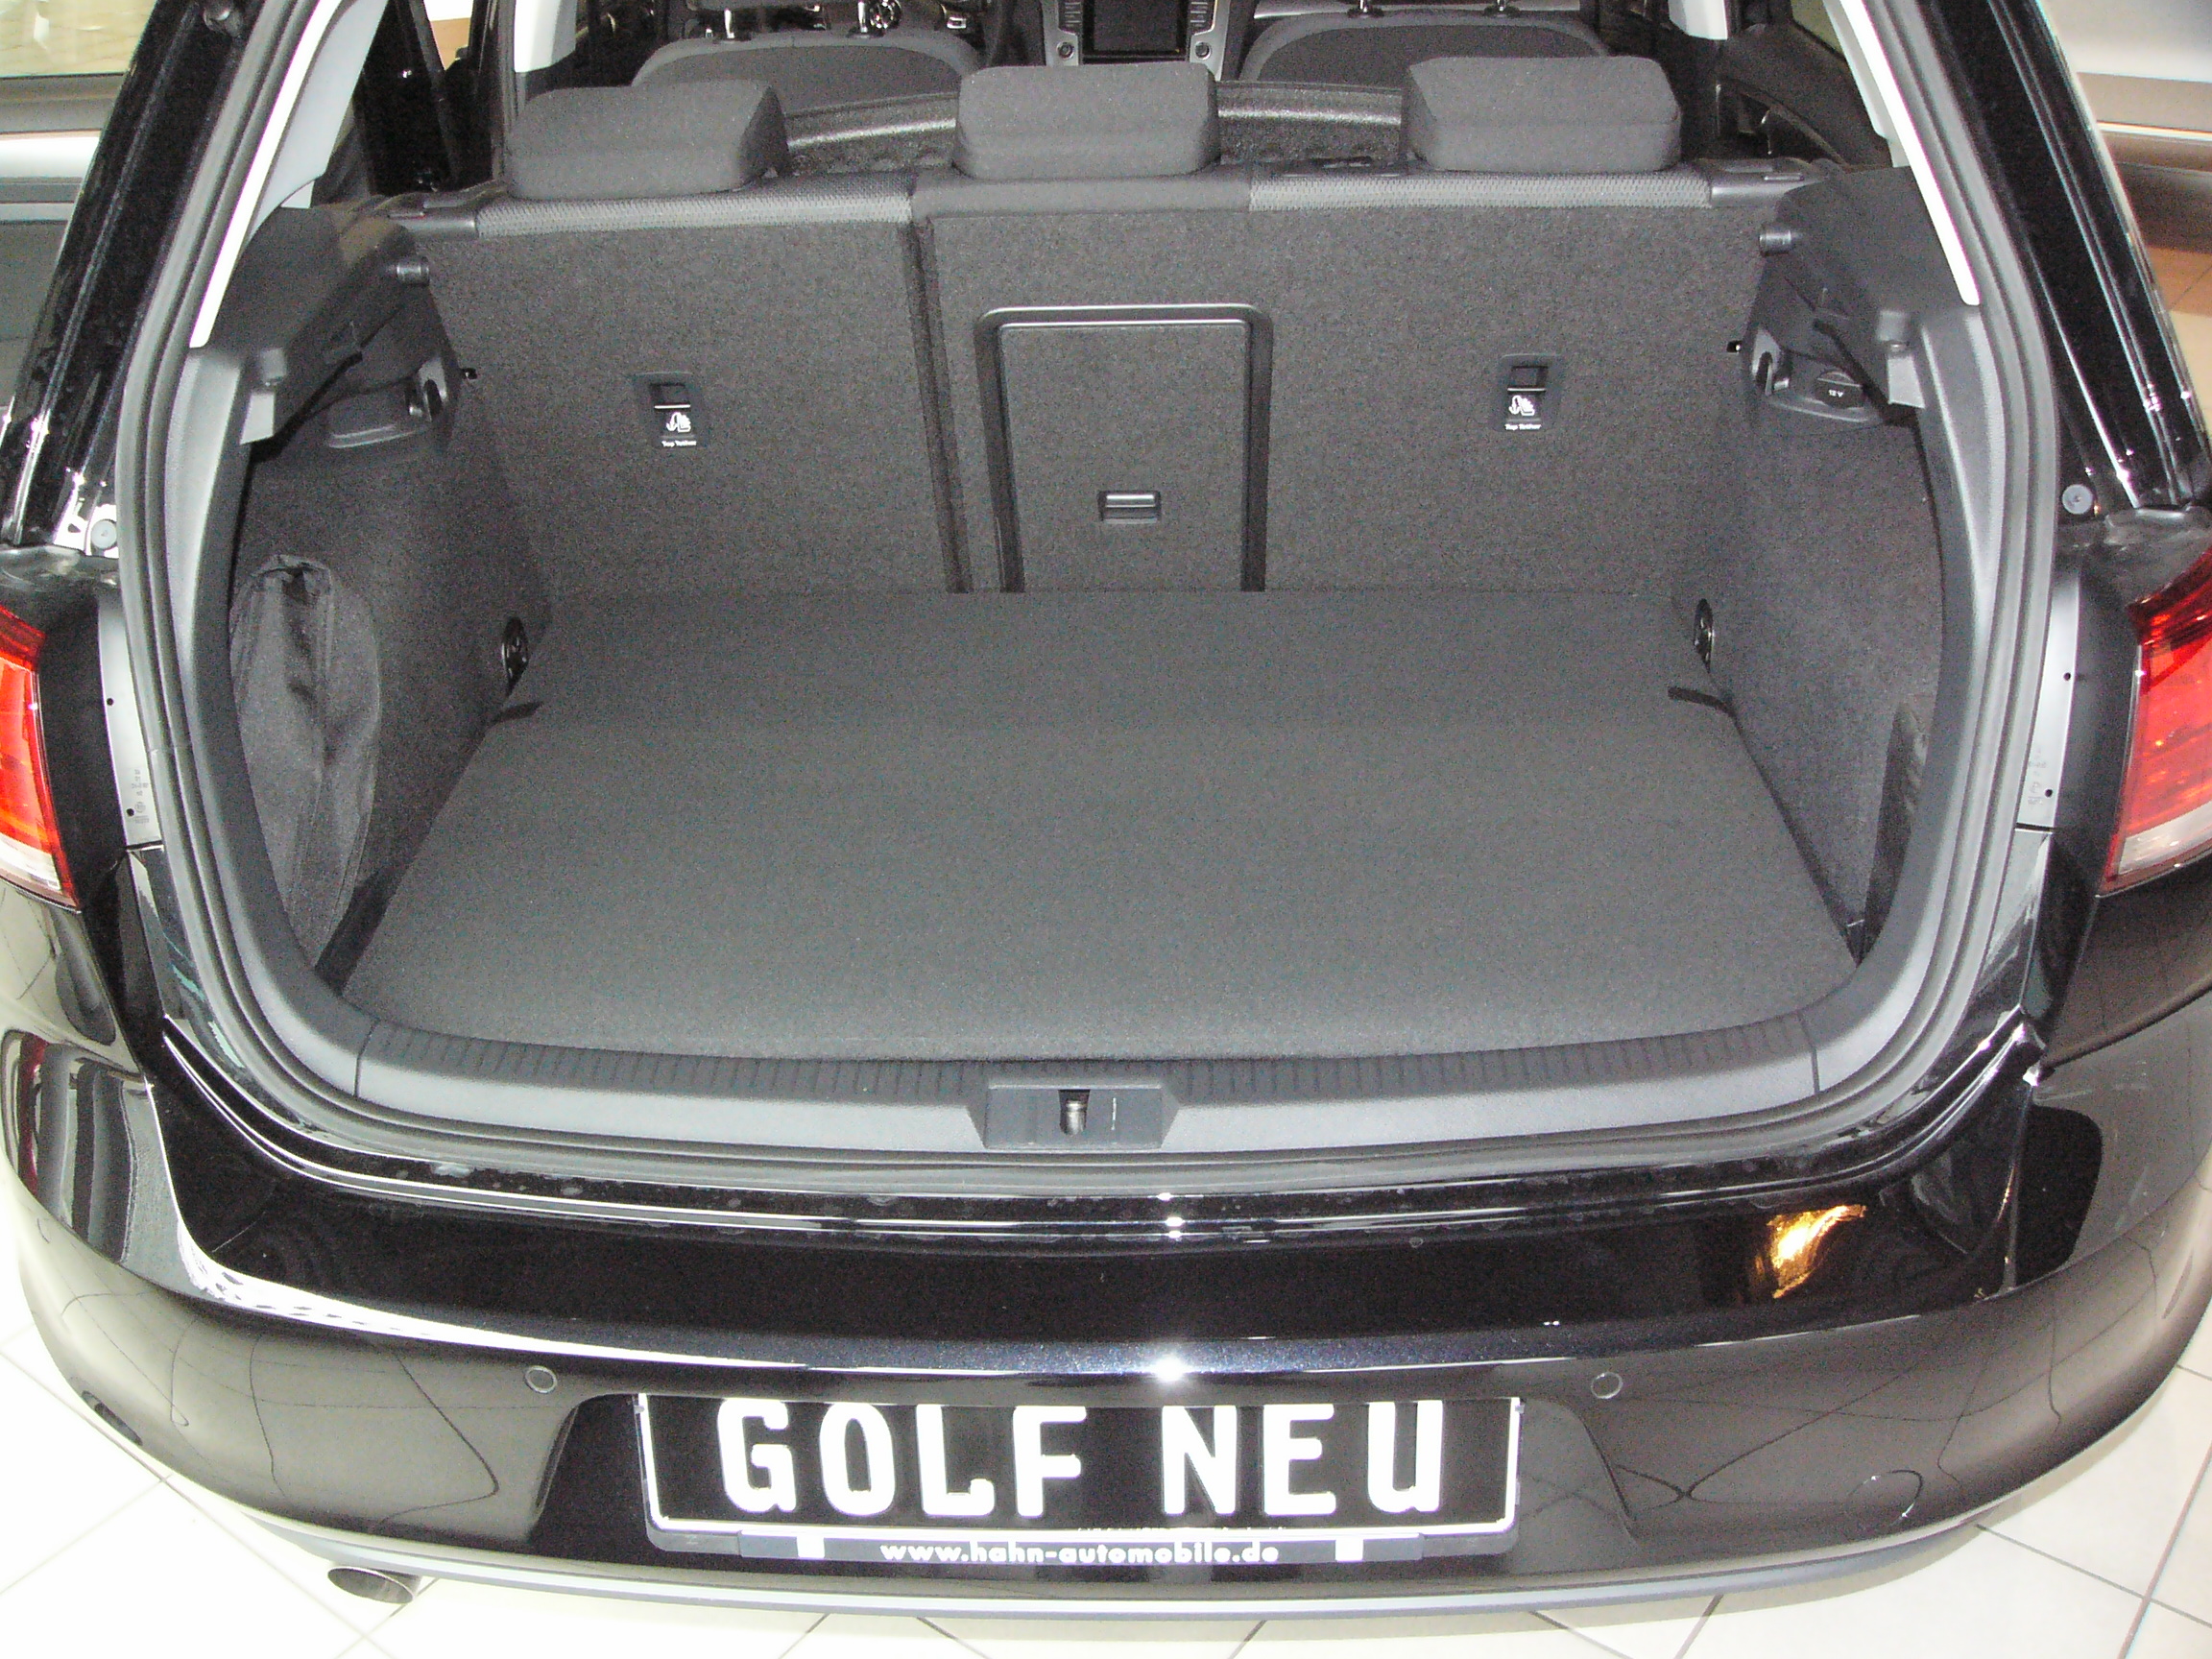 Kofferraumwanne, Hundebox für VW Golf 7. Eine Klasse für sich!